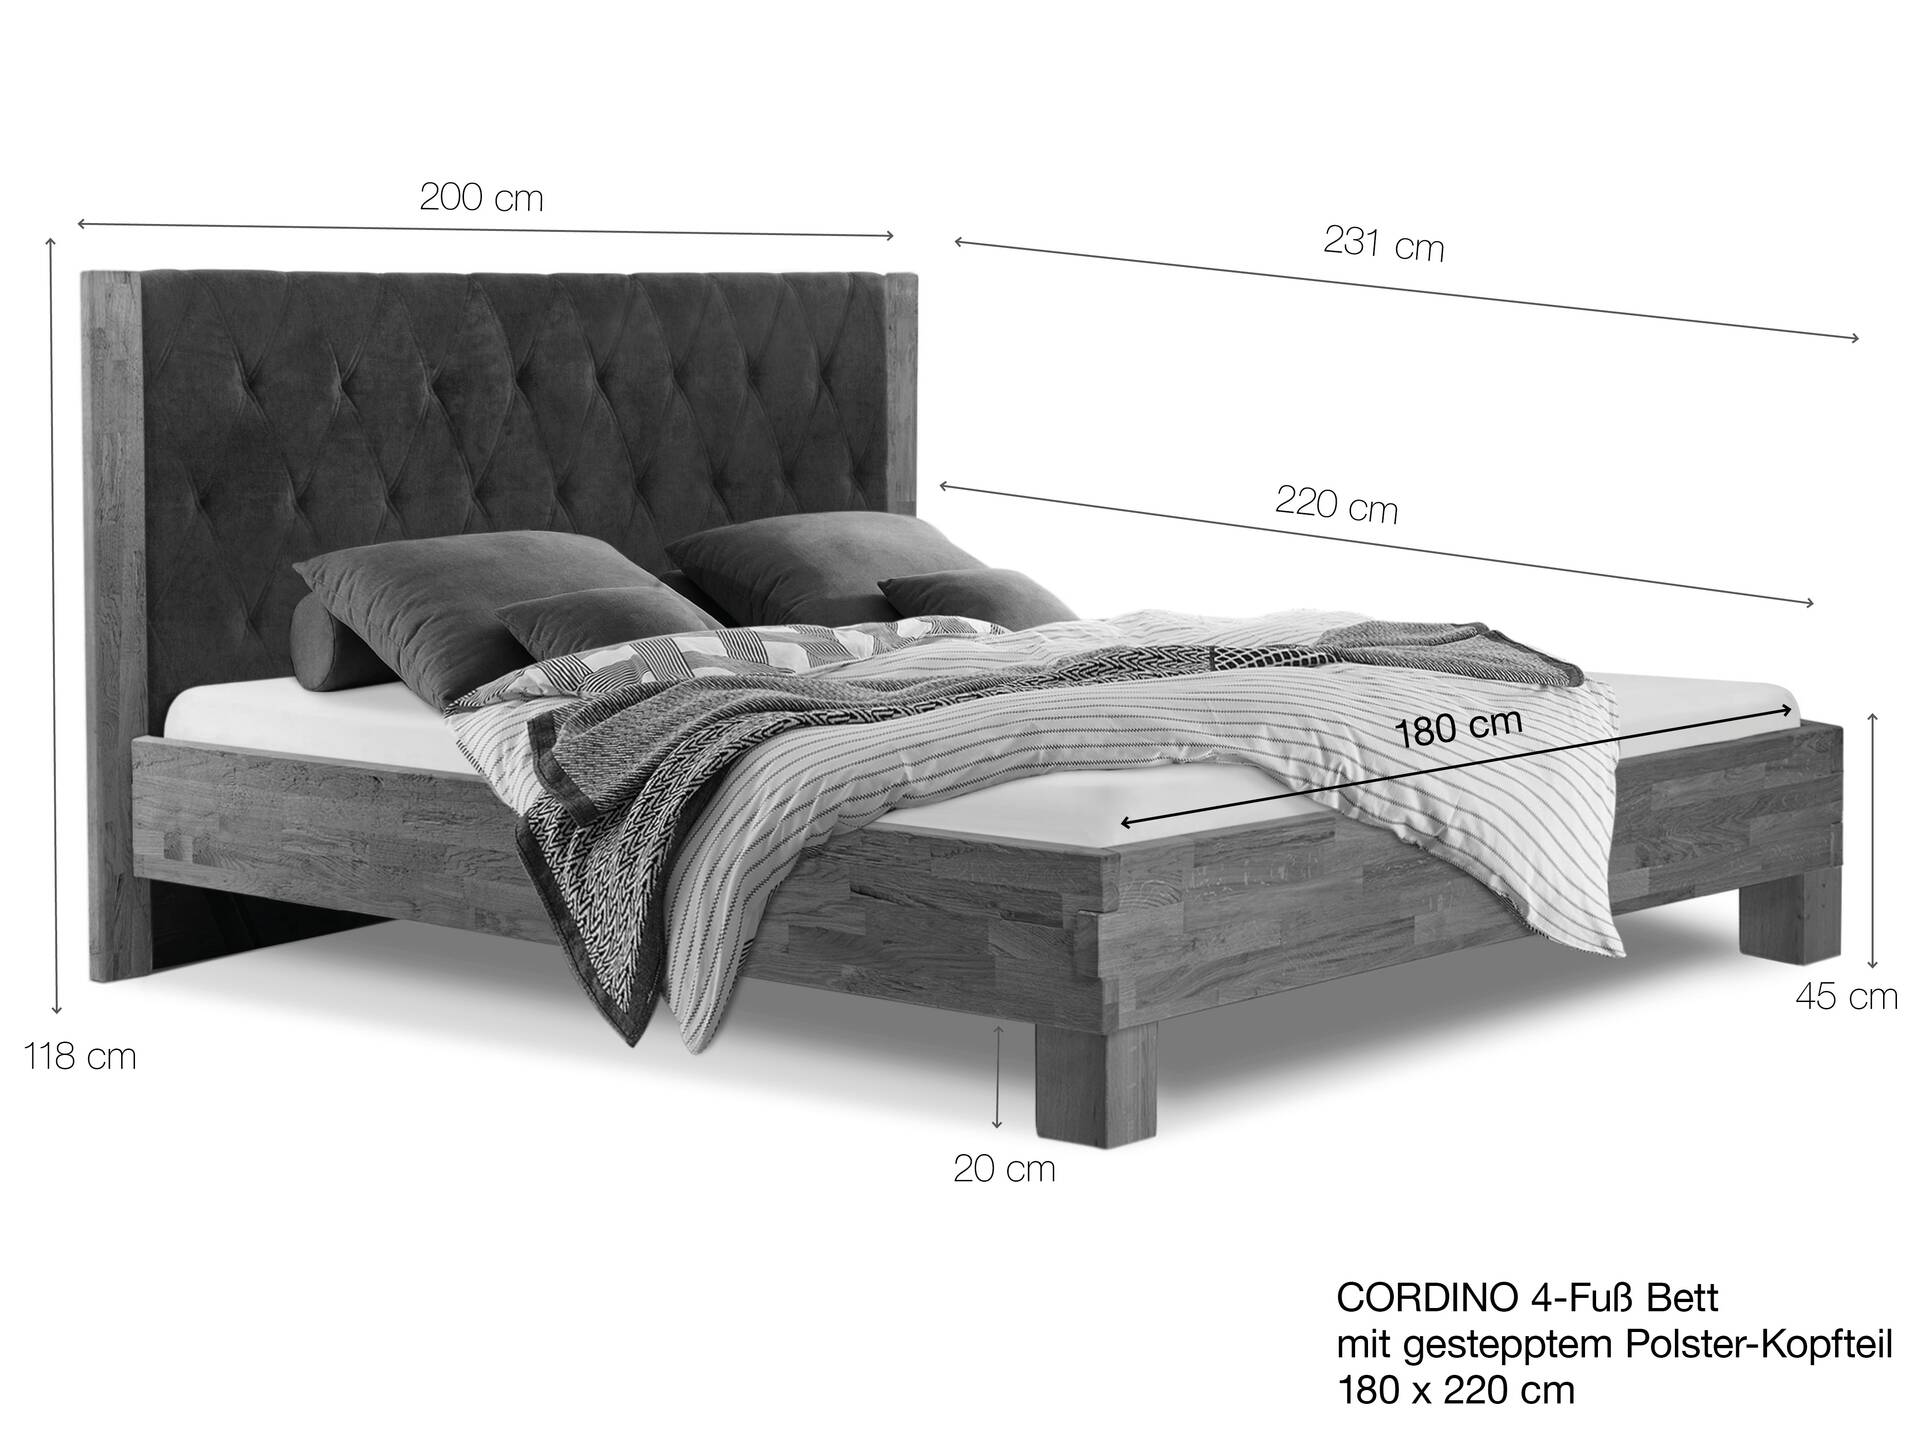 CORDINO 4-Fuß-Bett aus Eiche mit gestepptem Polster-Kopfteil, Material Massivholz 180 x 220 cm | Eiche lackiert | Stoff Anthrazit | gebürstet